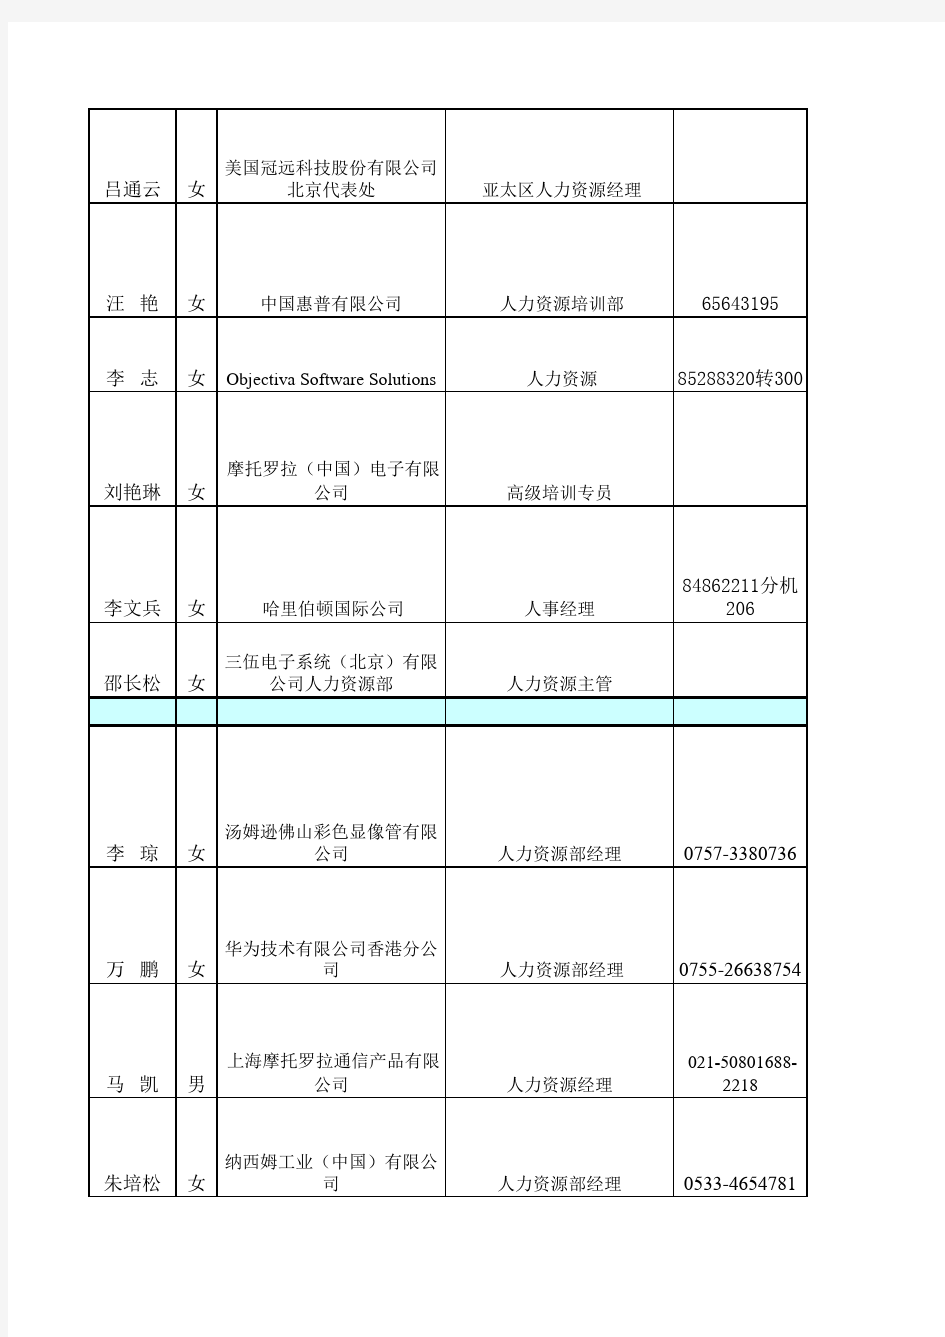 国内大型企业北京公司HR名单